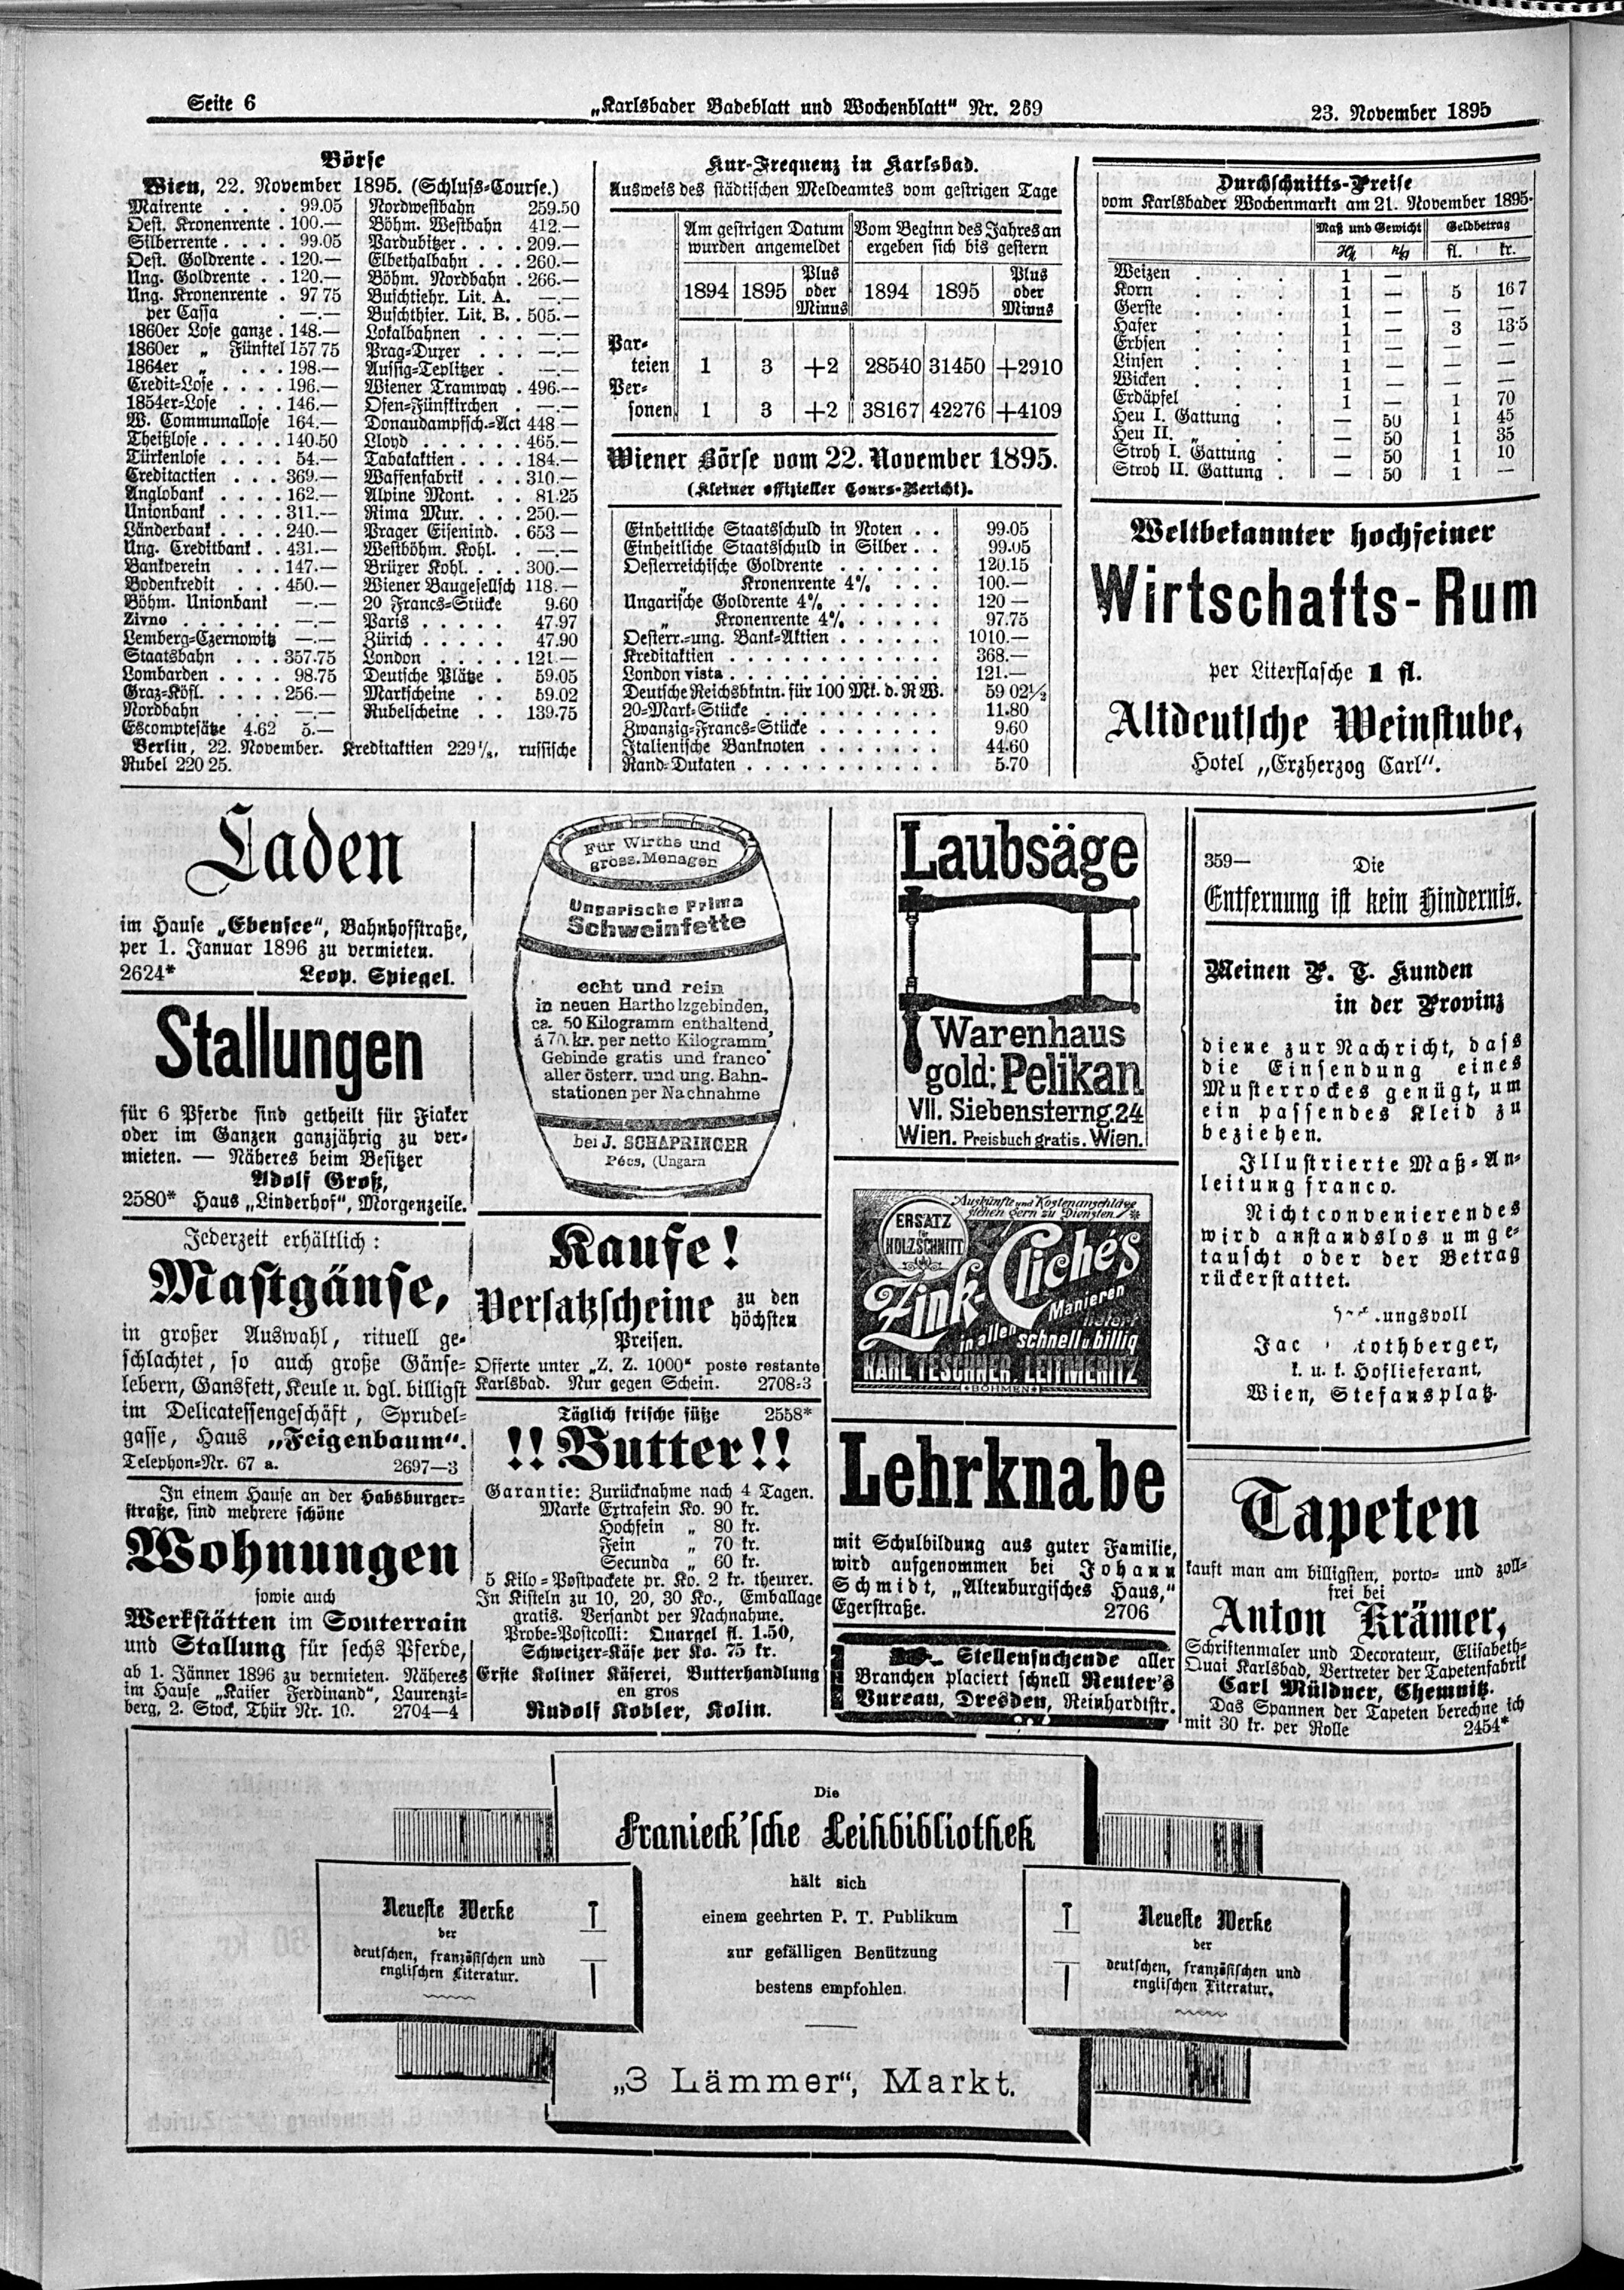 6. karlsbader-badeblatt-1895-11-23-n269_6140